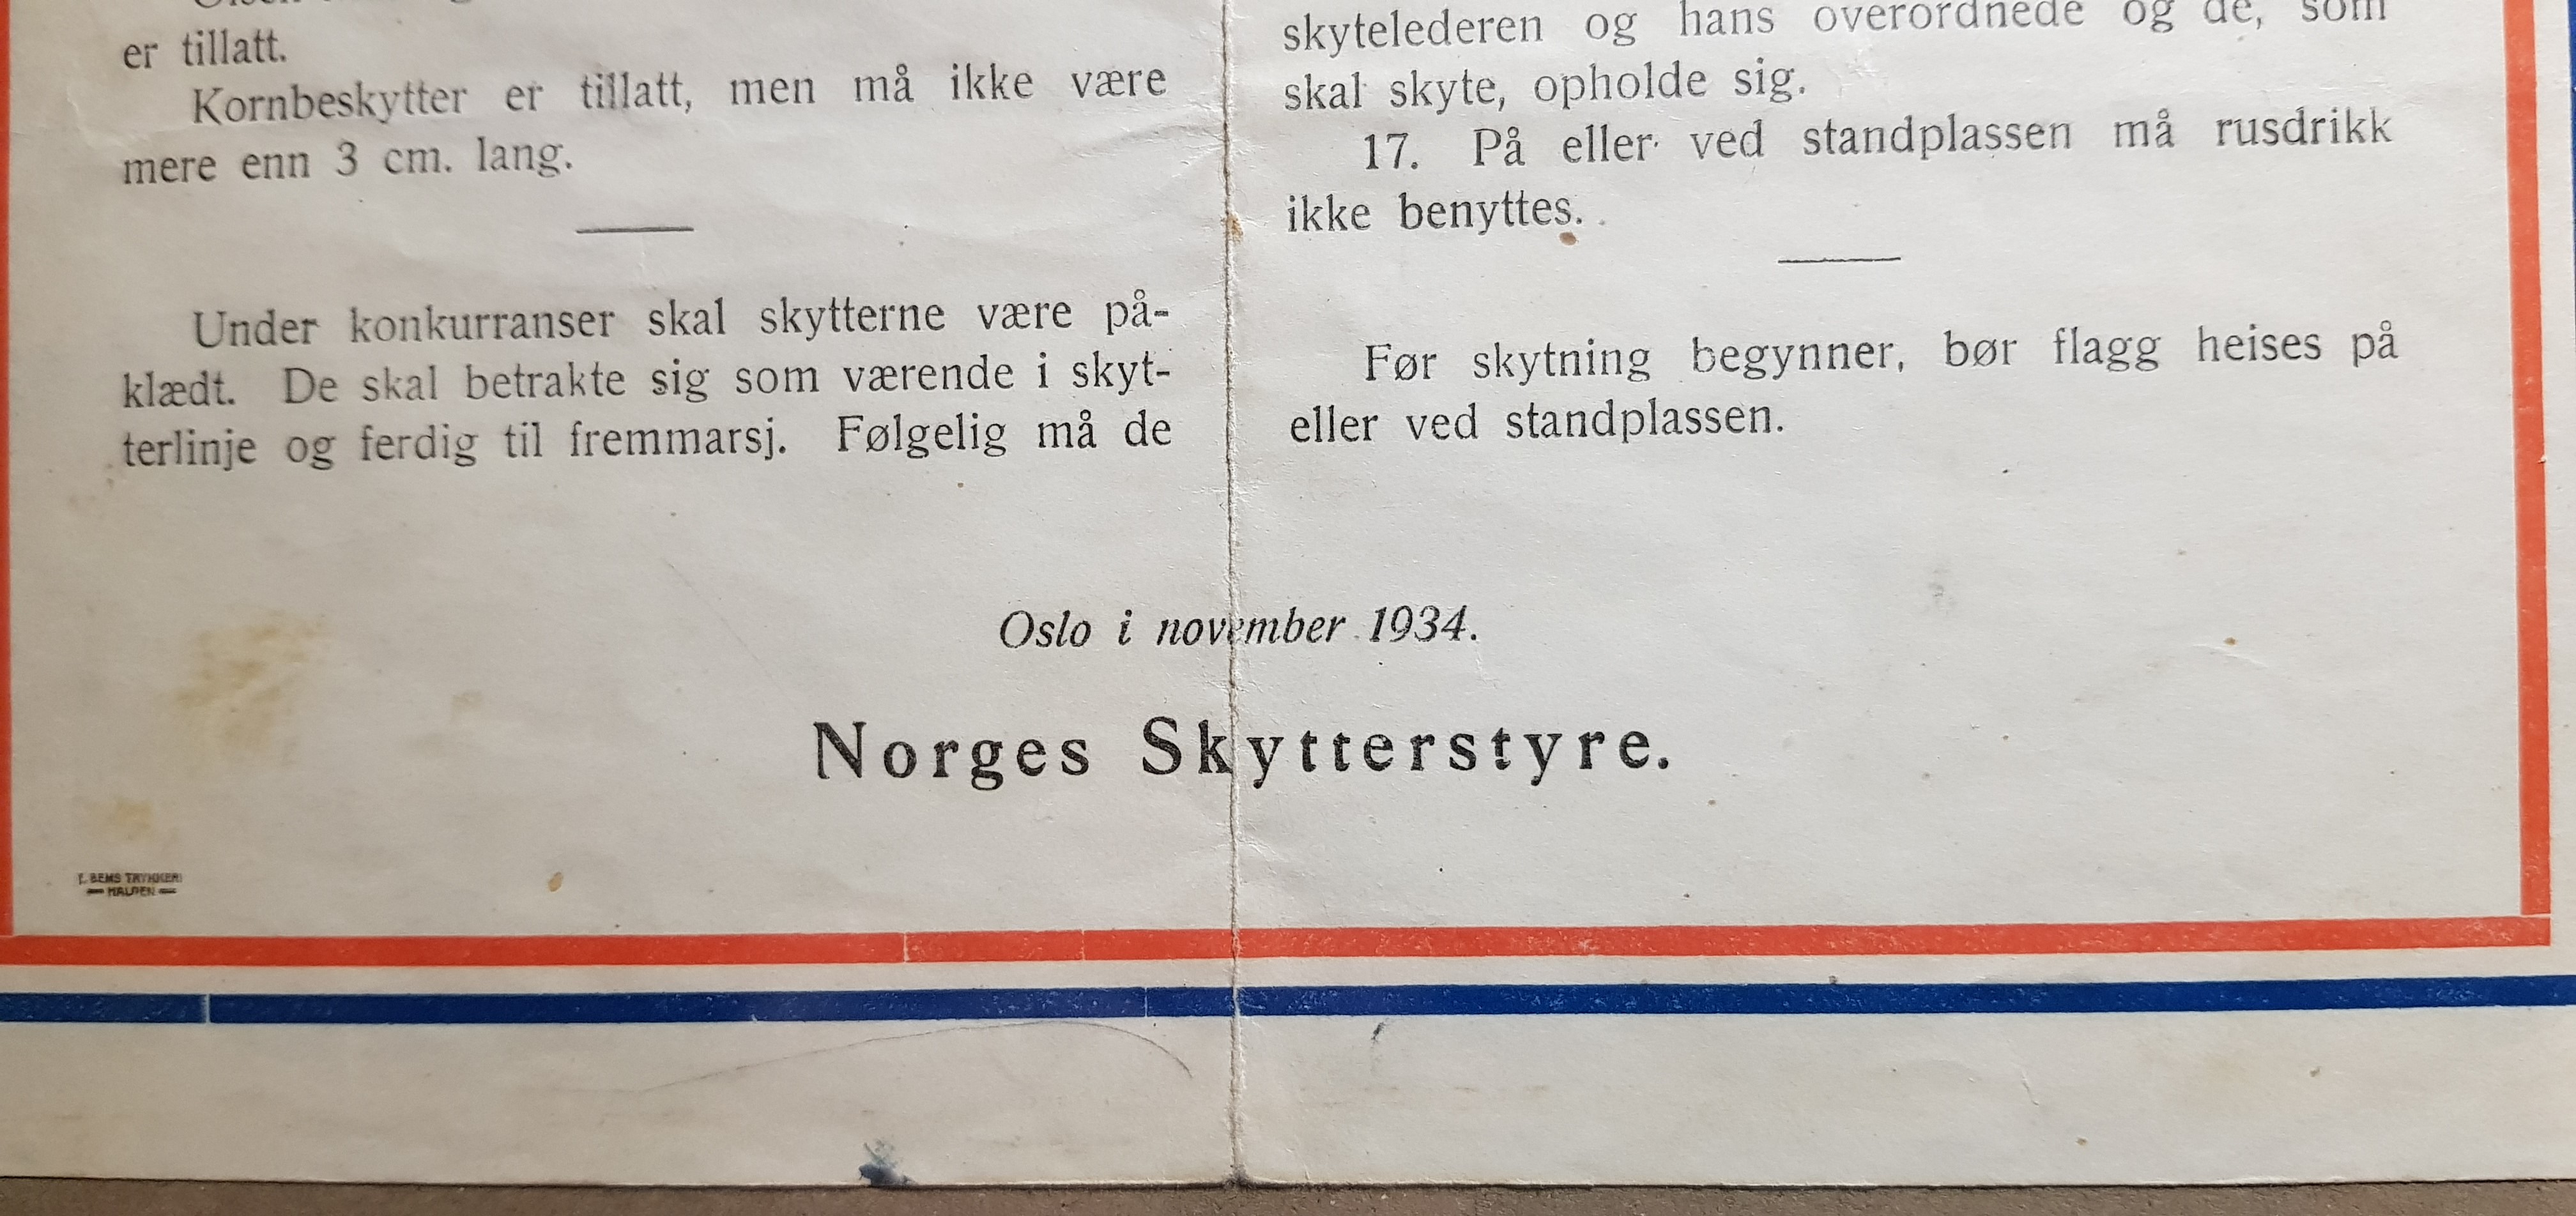 ./doc/diverse/Oppslag-Norsk-Skytterstyre-nov-1934-4.jpg